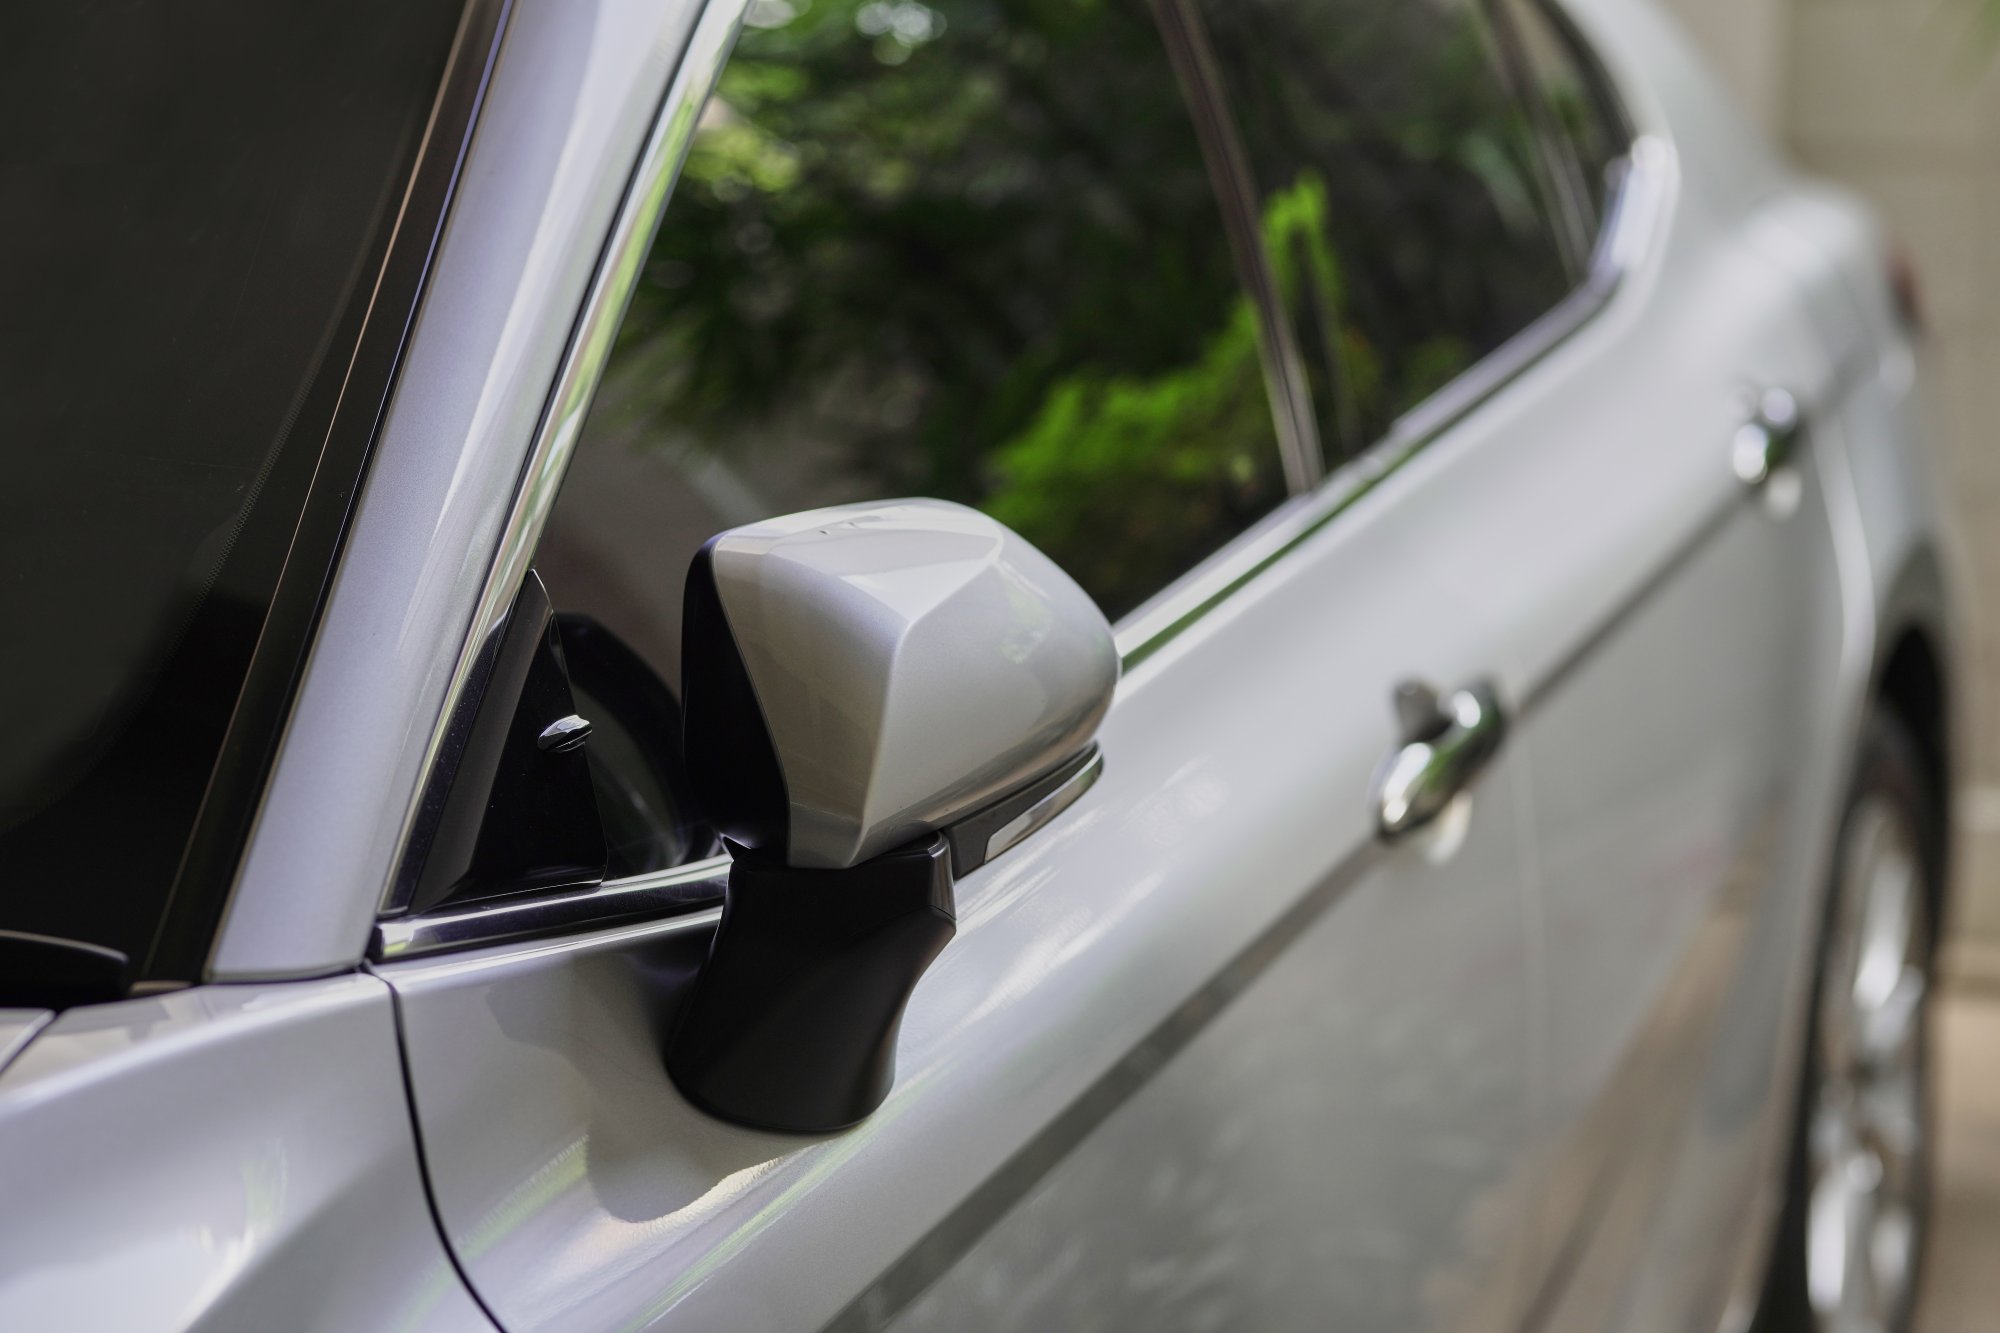 Πότε θα πρέπει να κλείνετε τους καθρέπτες του αυτοκινήτου όταν παρκάρετε και πότε όχι